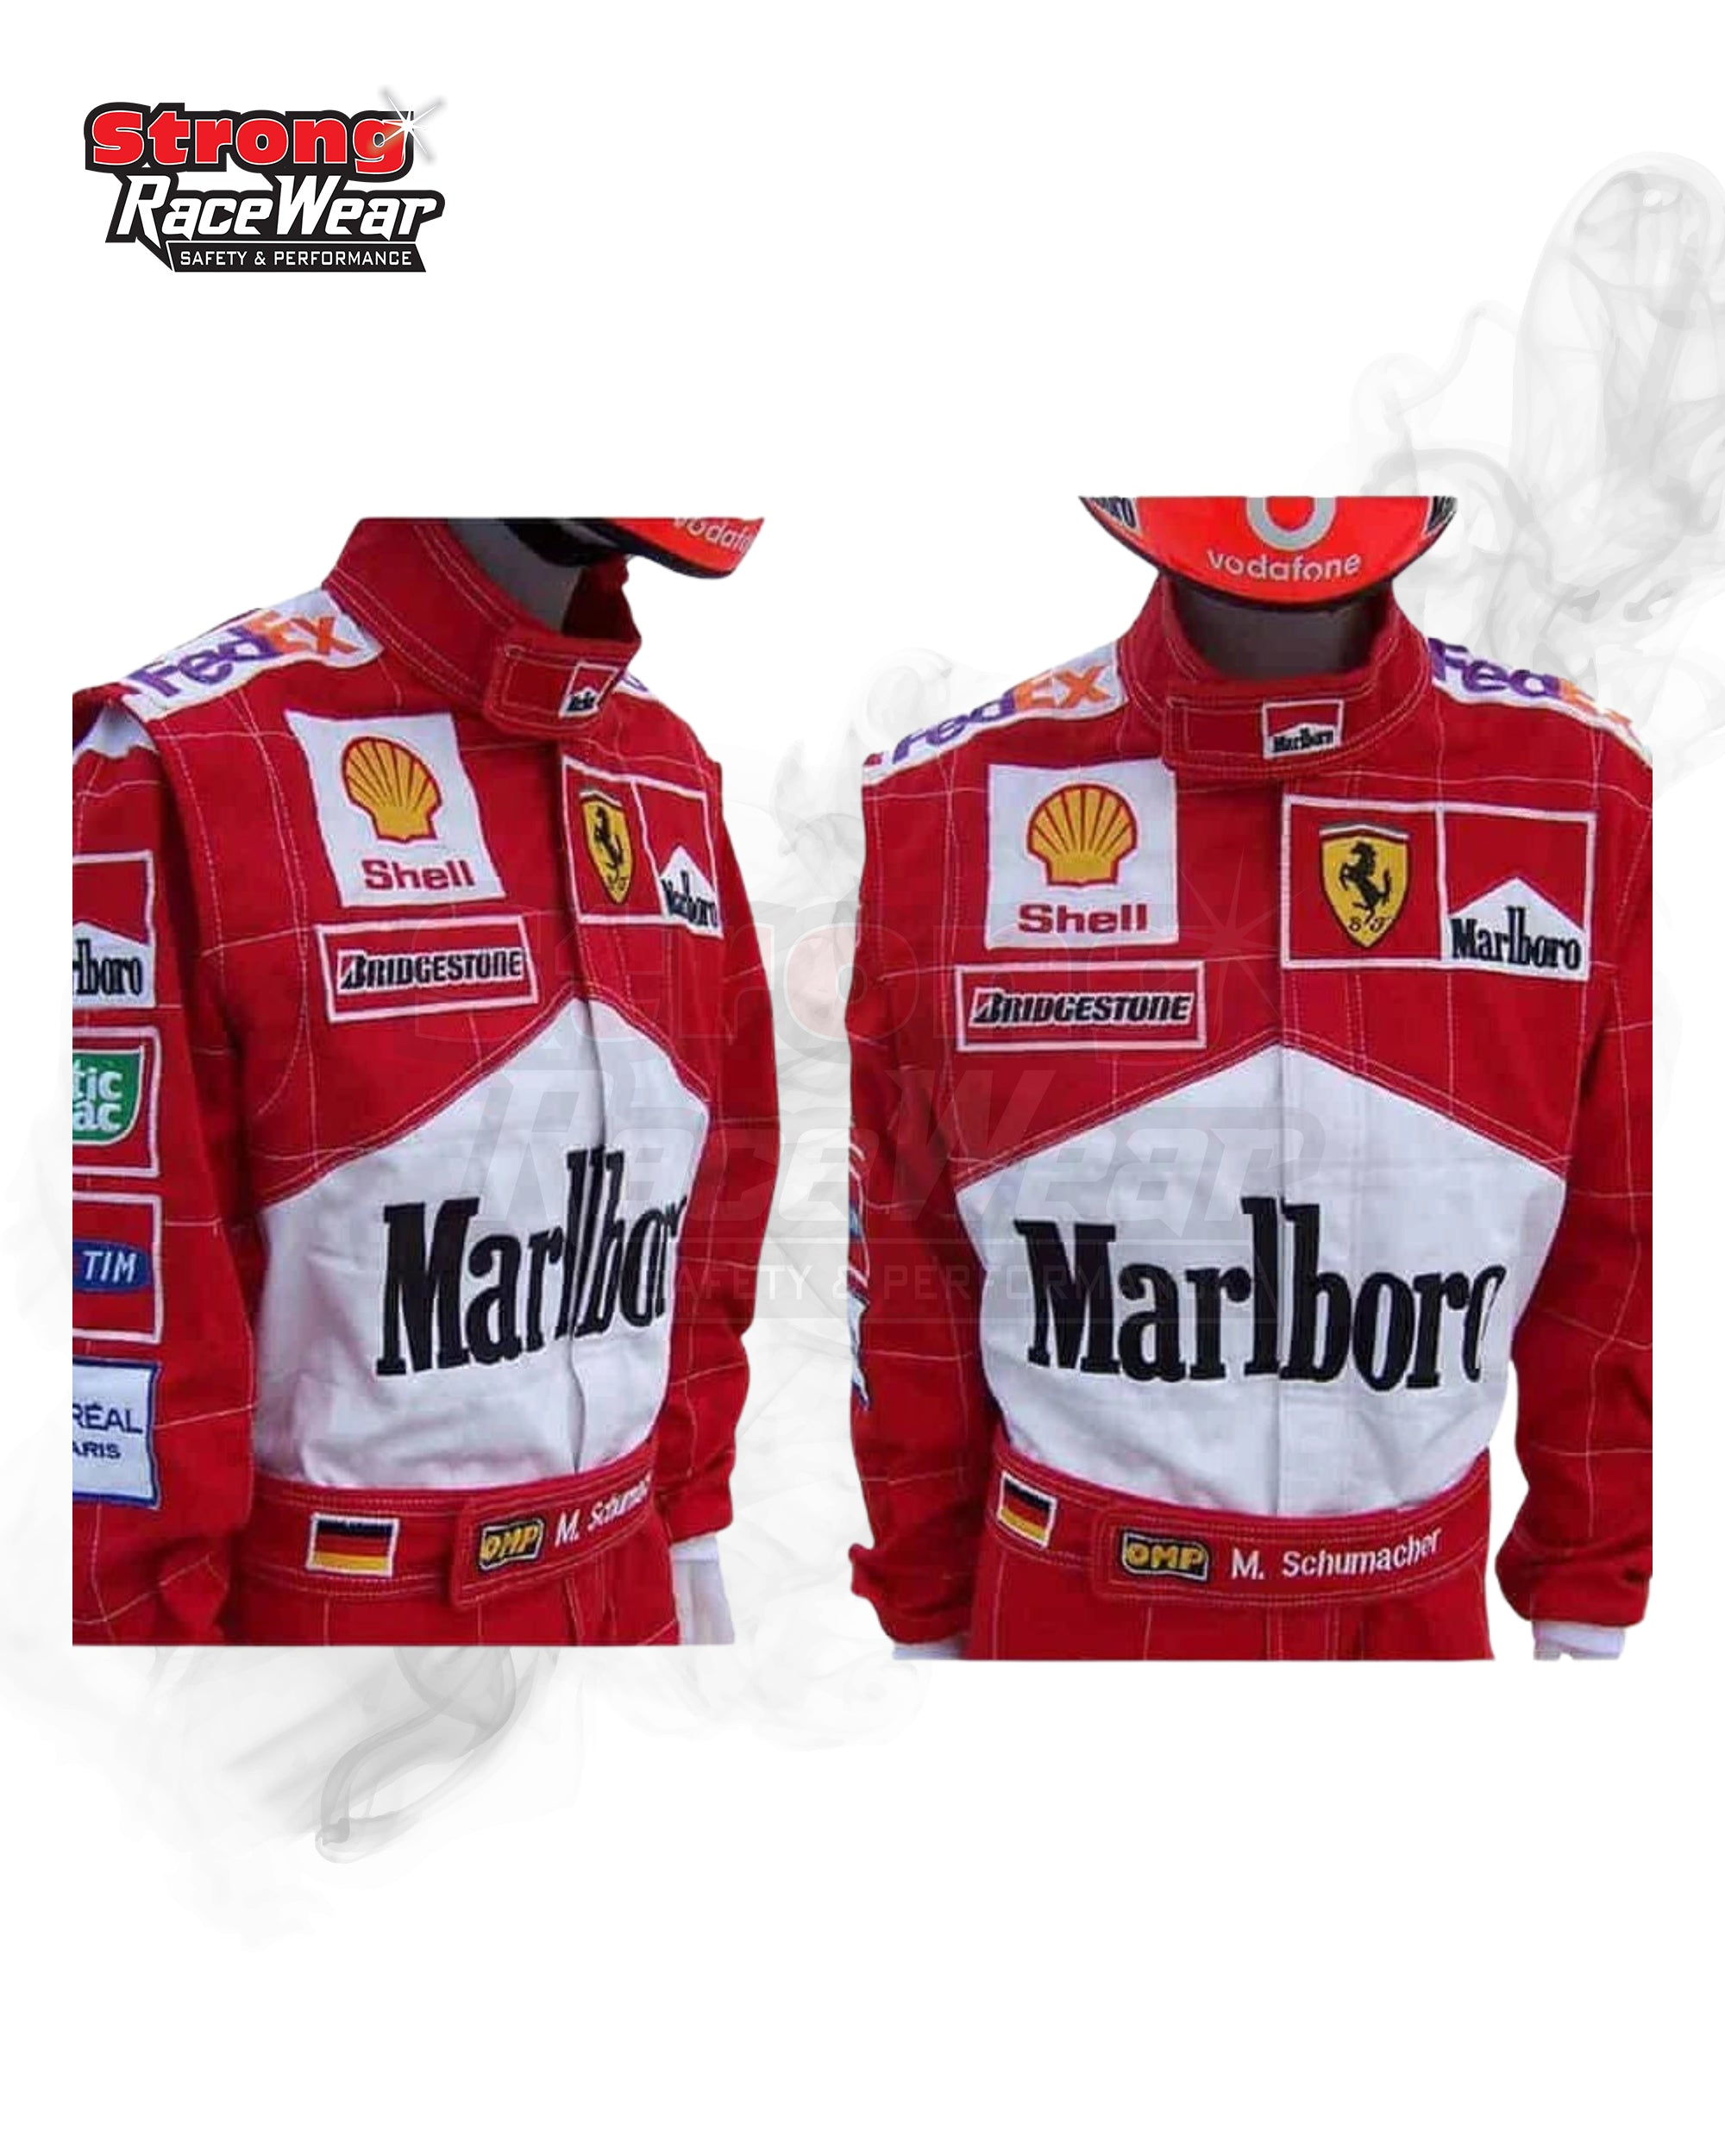 Michael Schumacher 1993 F1 Race Suit